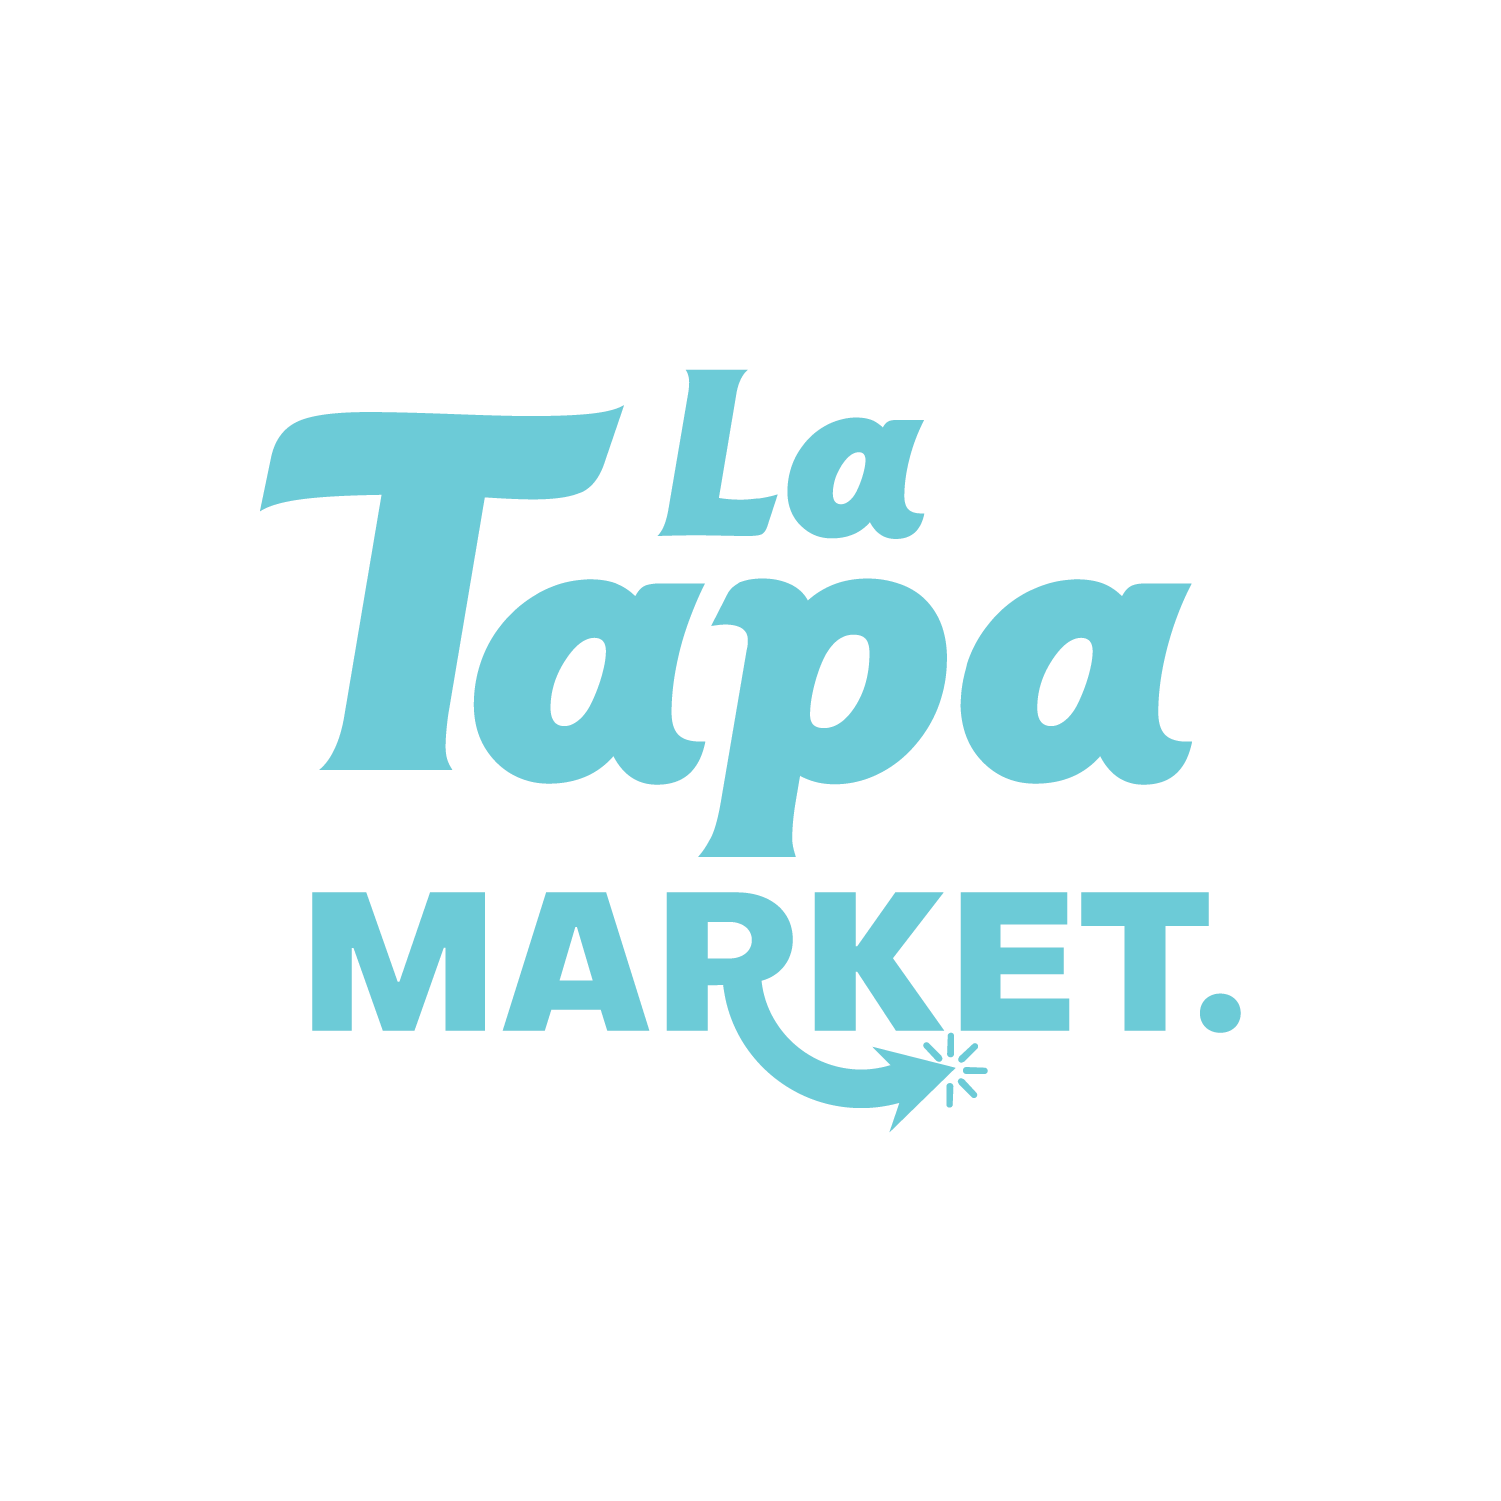 La tapa market3